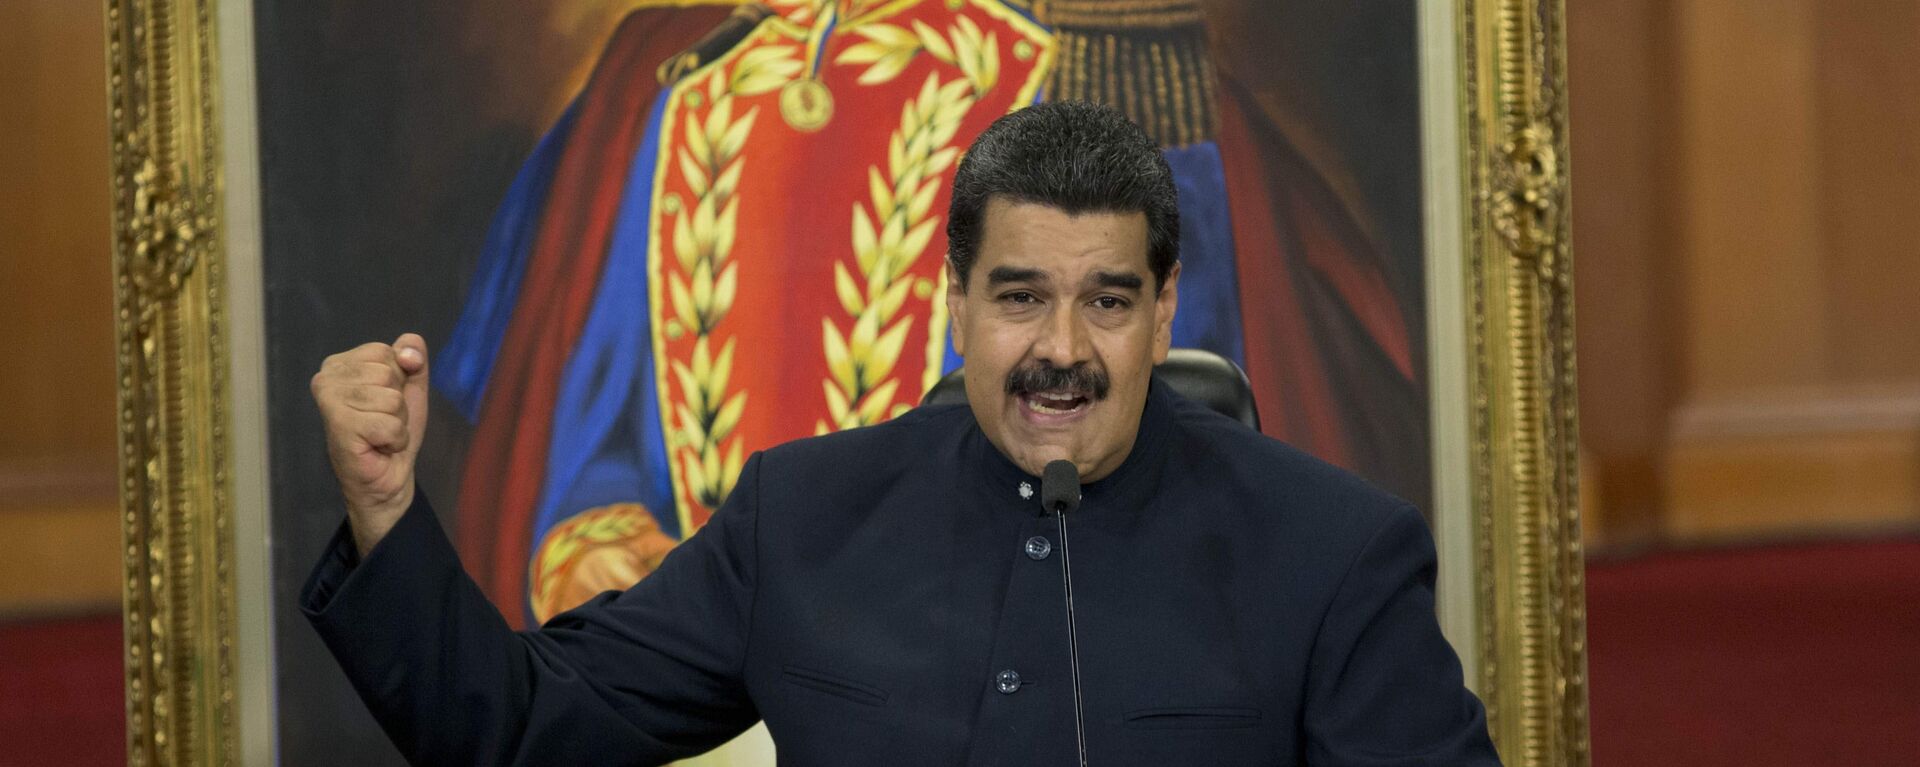 Nicolás Maduro, presidente de Venezuela - Sputnik Mundo, 1920, 02.07.2021